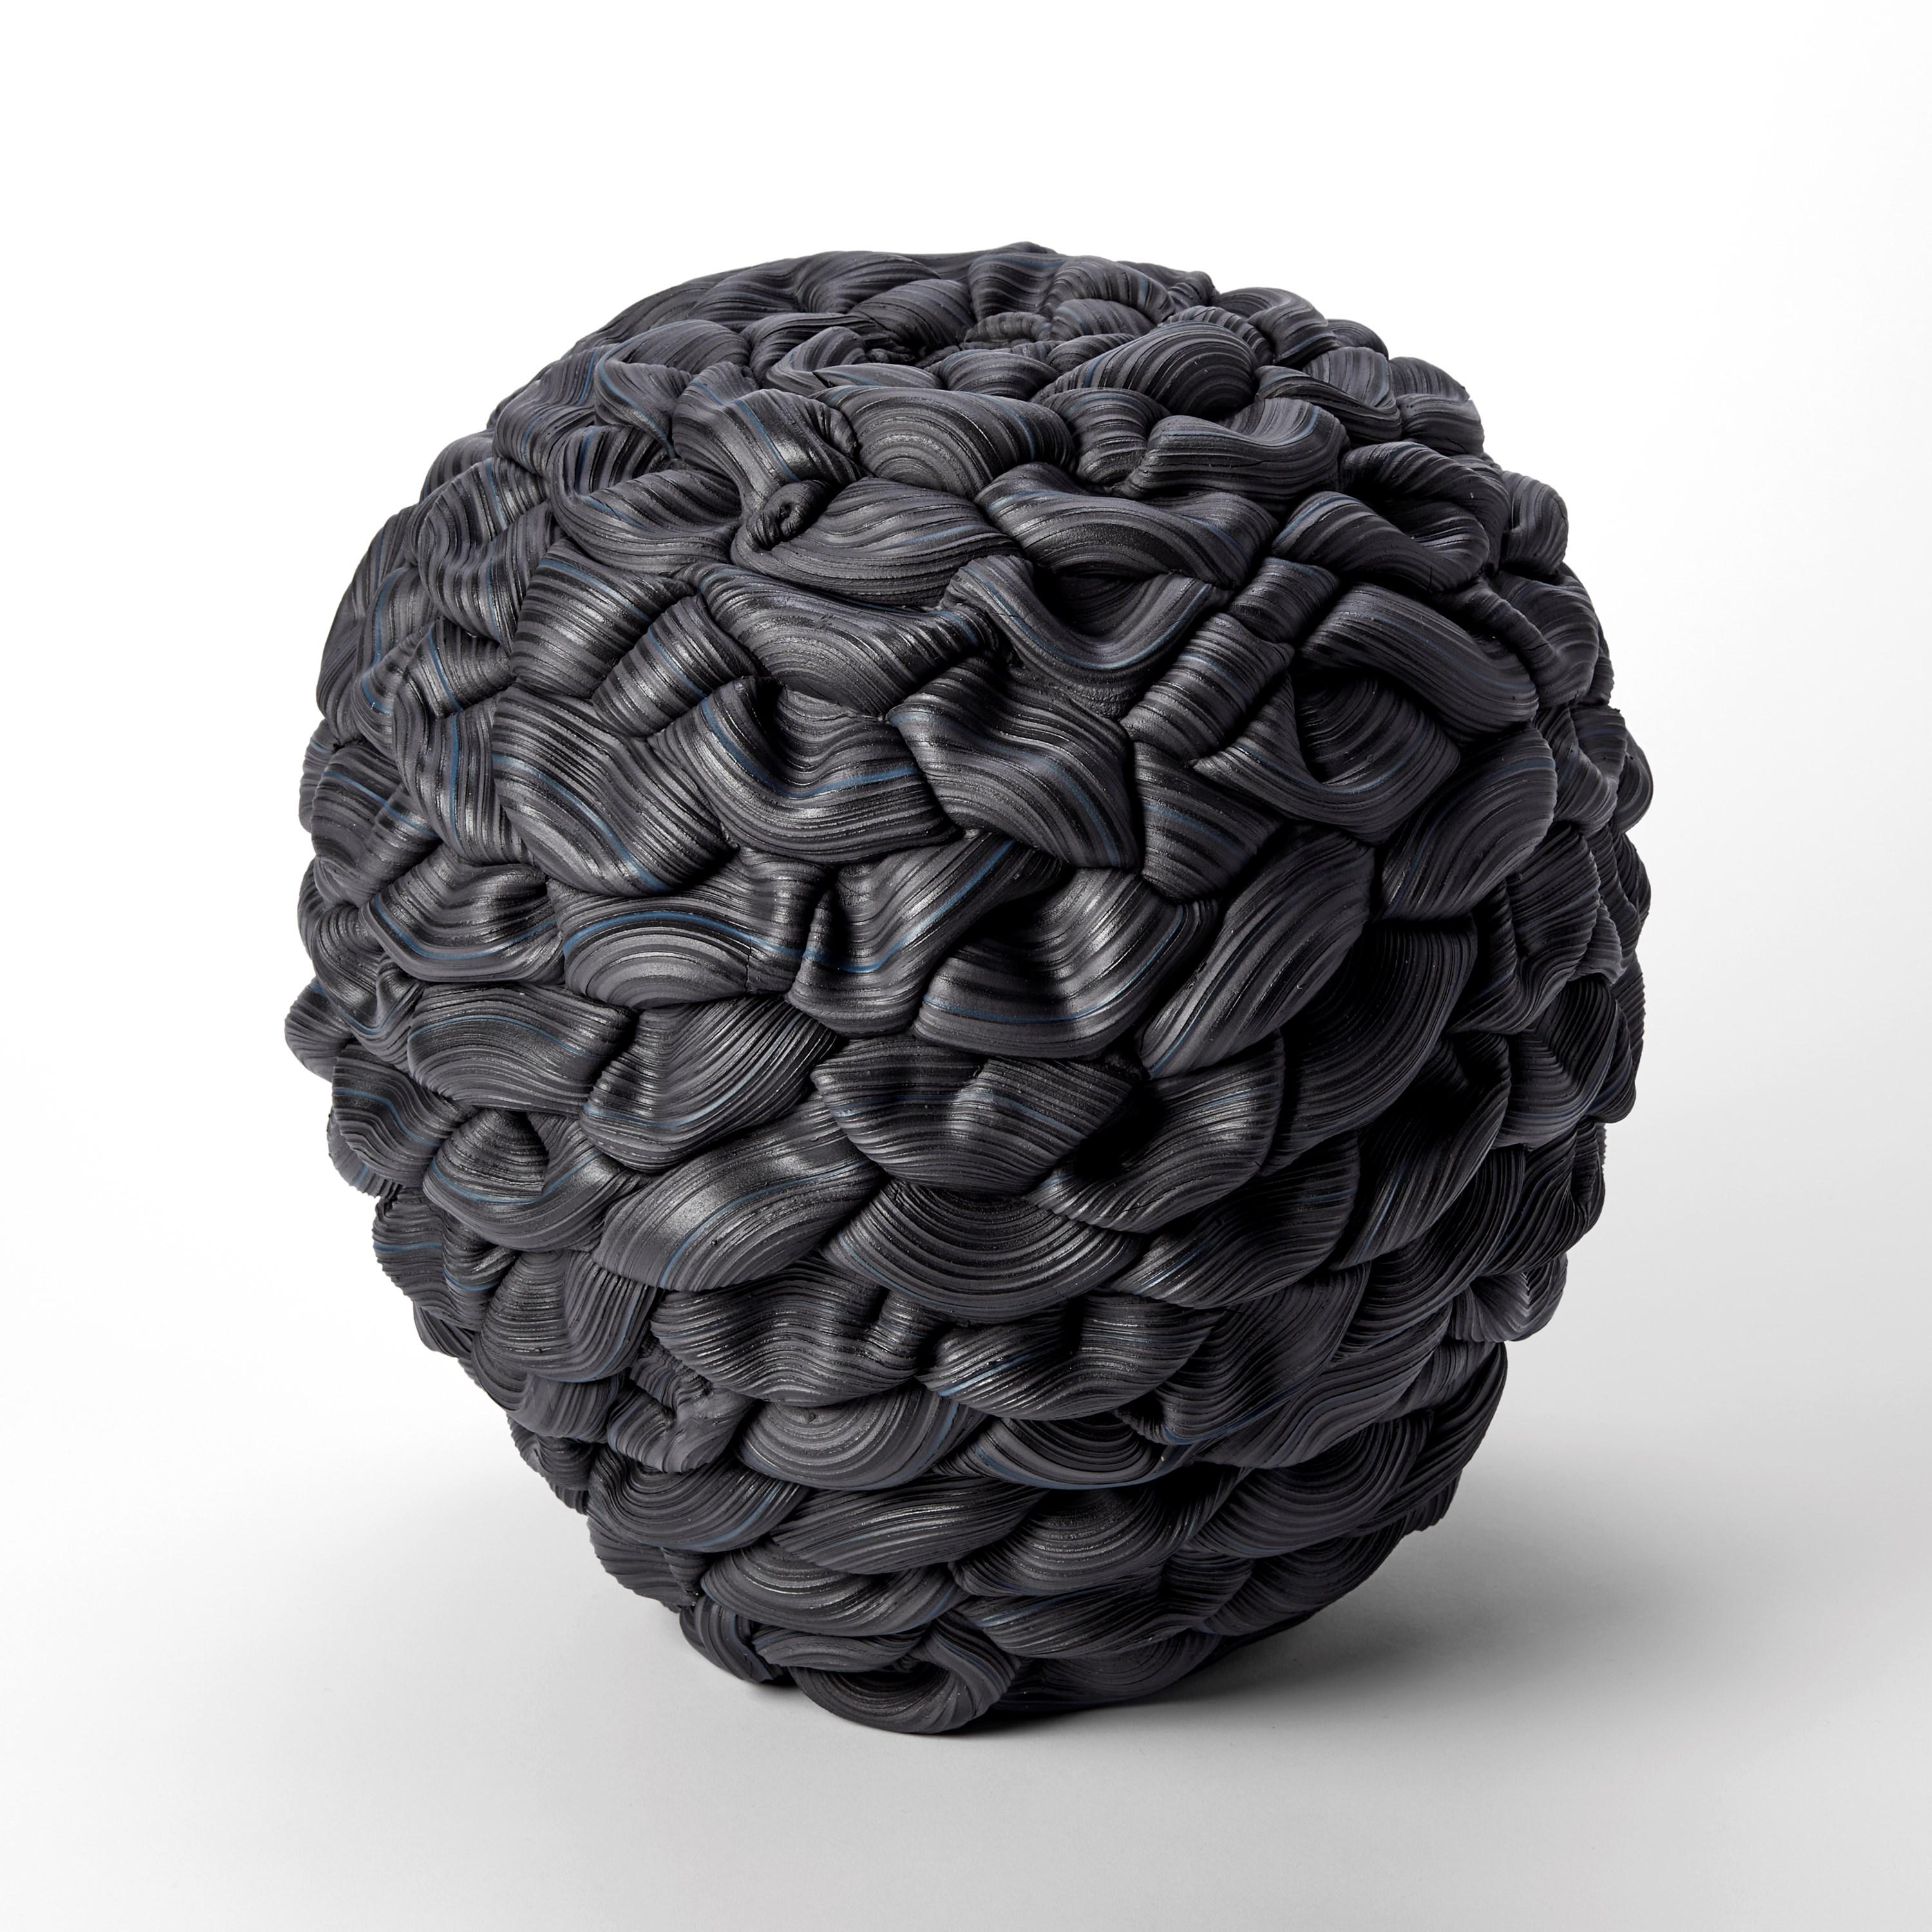 British Banded Black Convex Fold V, black parian porcelain sculpture by Steven Edwards For Sale